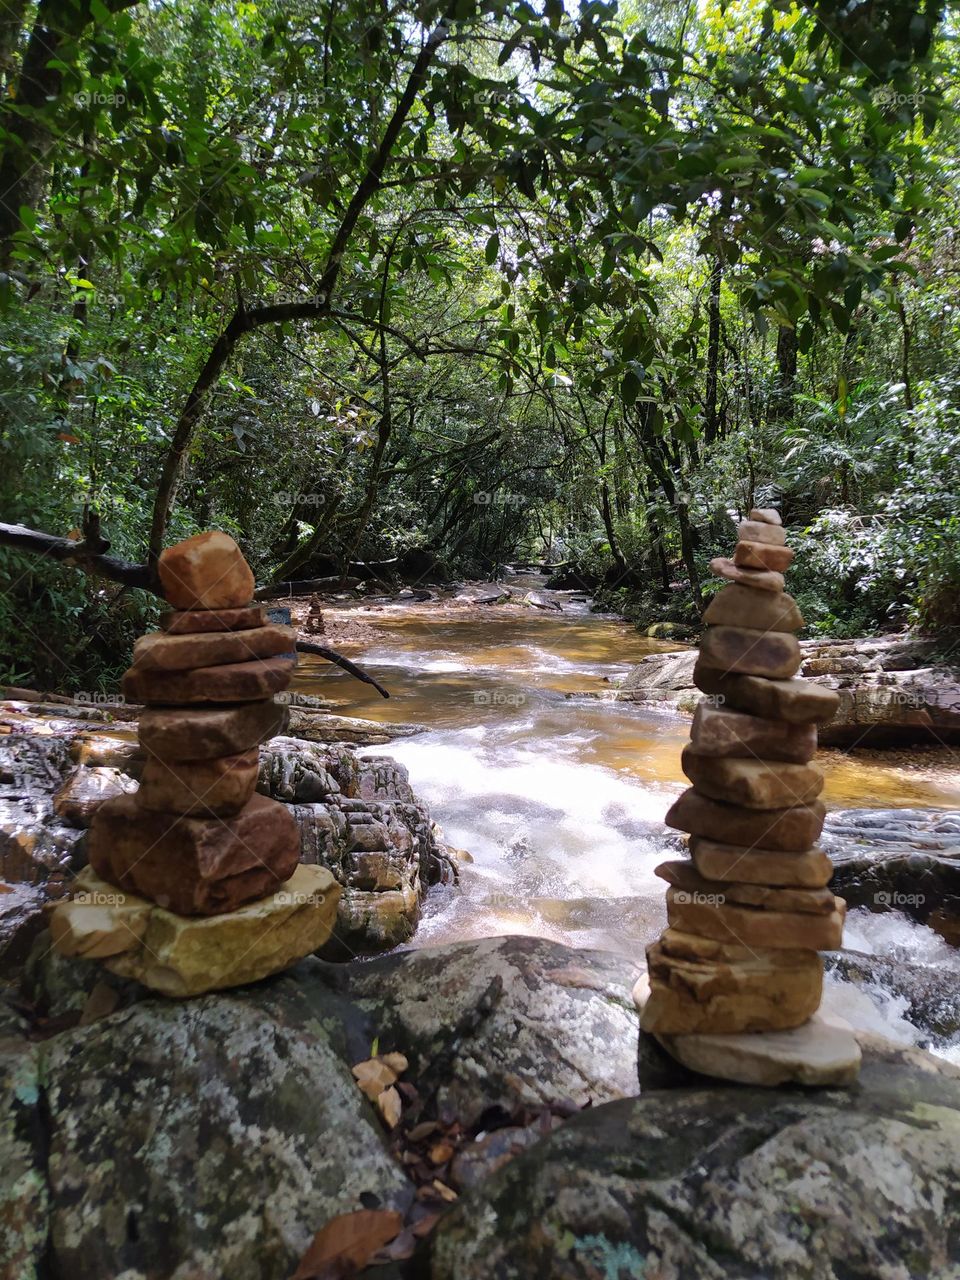 pedras para relaxamento em natureza.